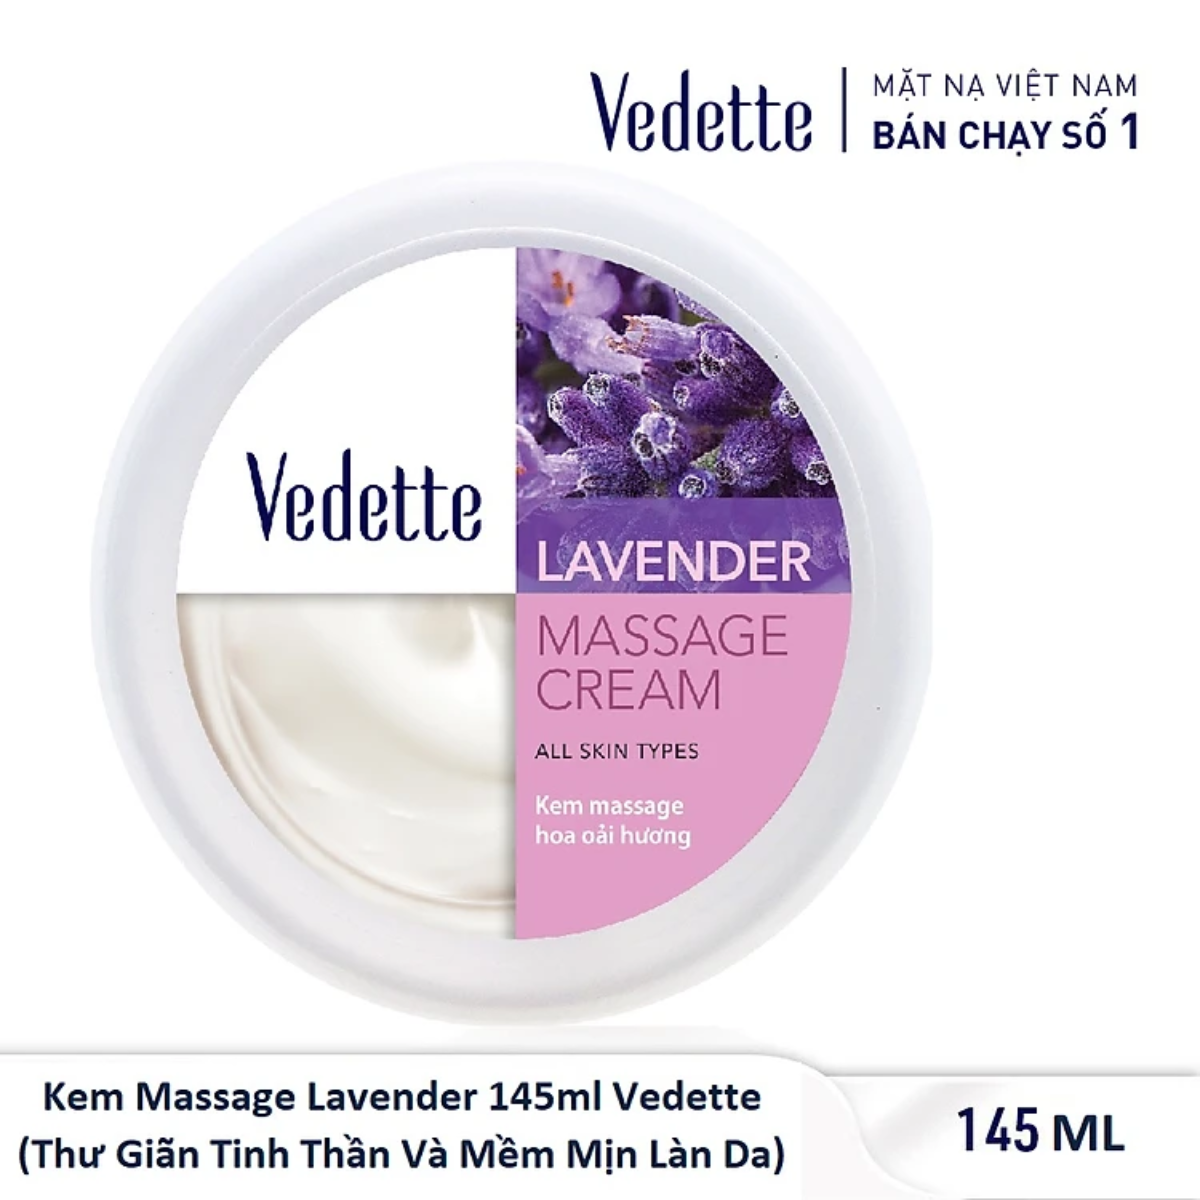 Kem massage Vedette Lavender 145ml